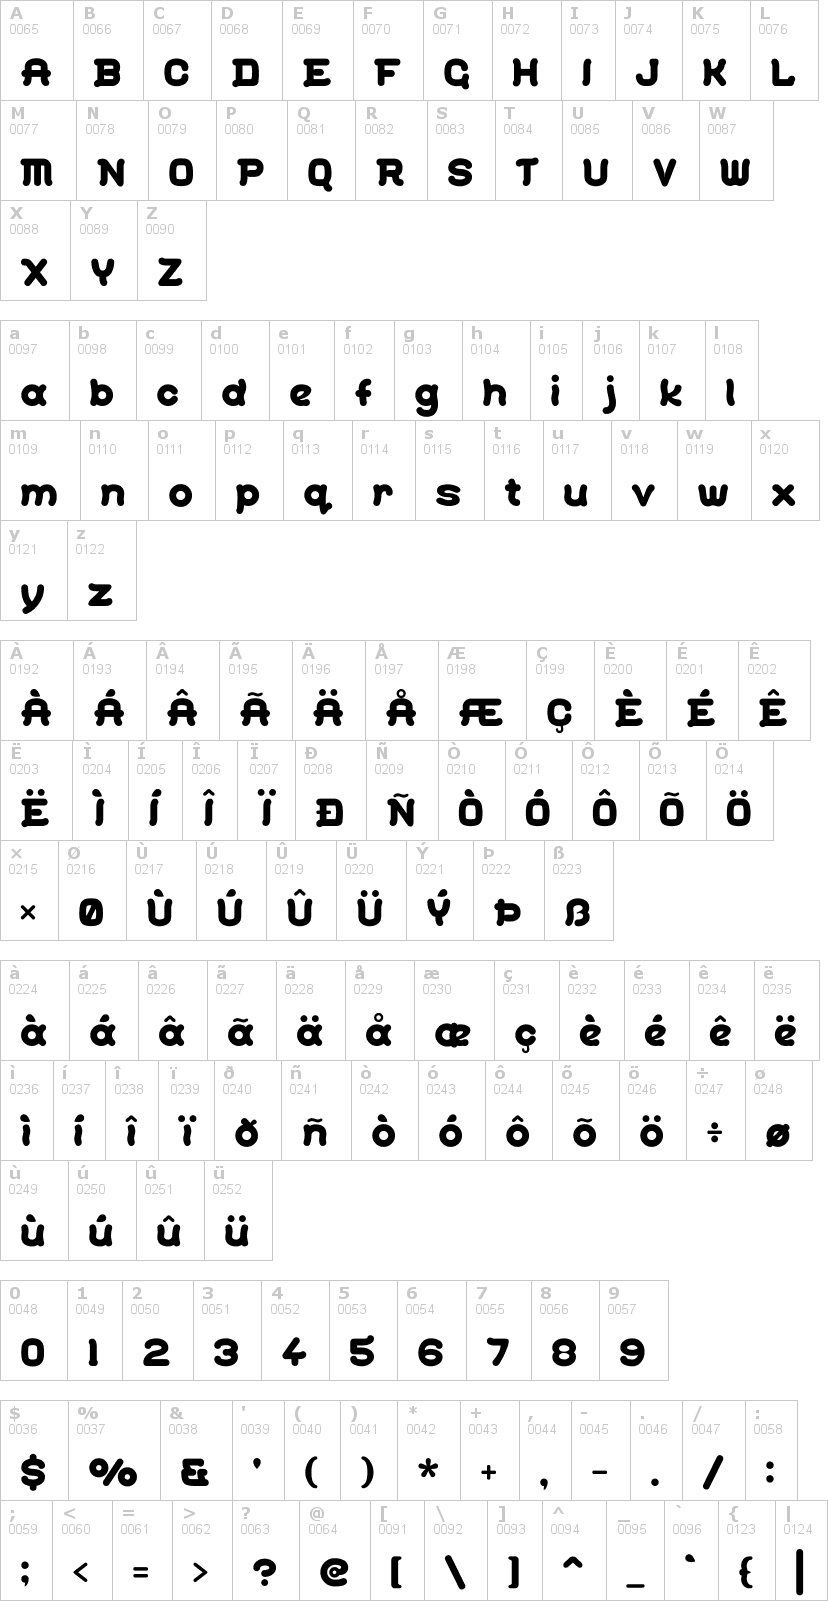 Lettere dell'alfabeto del font gohan con le quali è possibile realizzare adesivi prespaziati